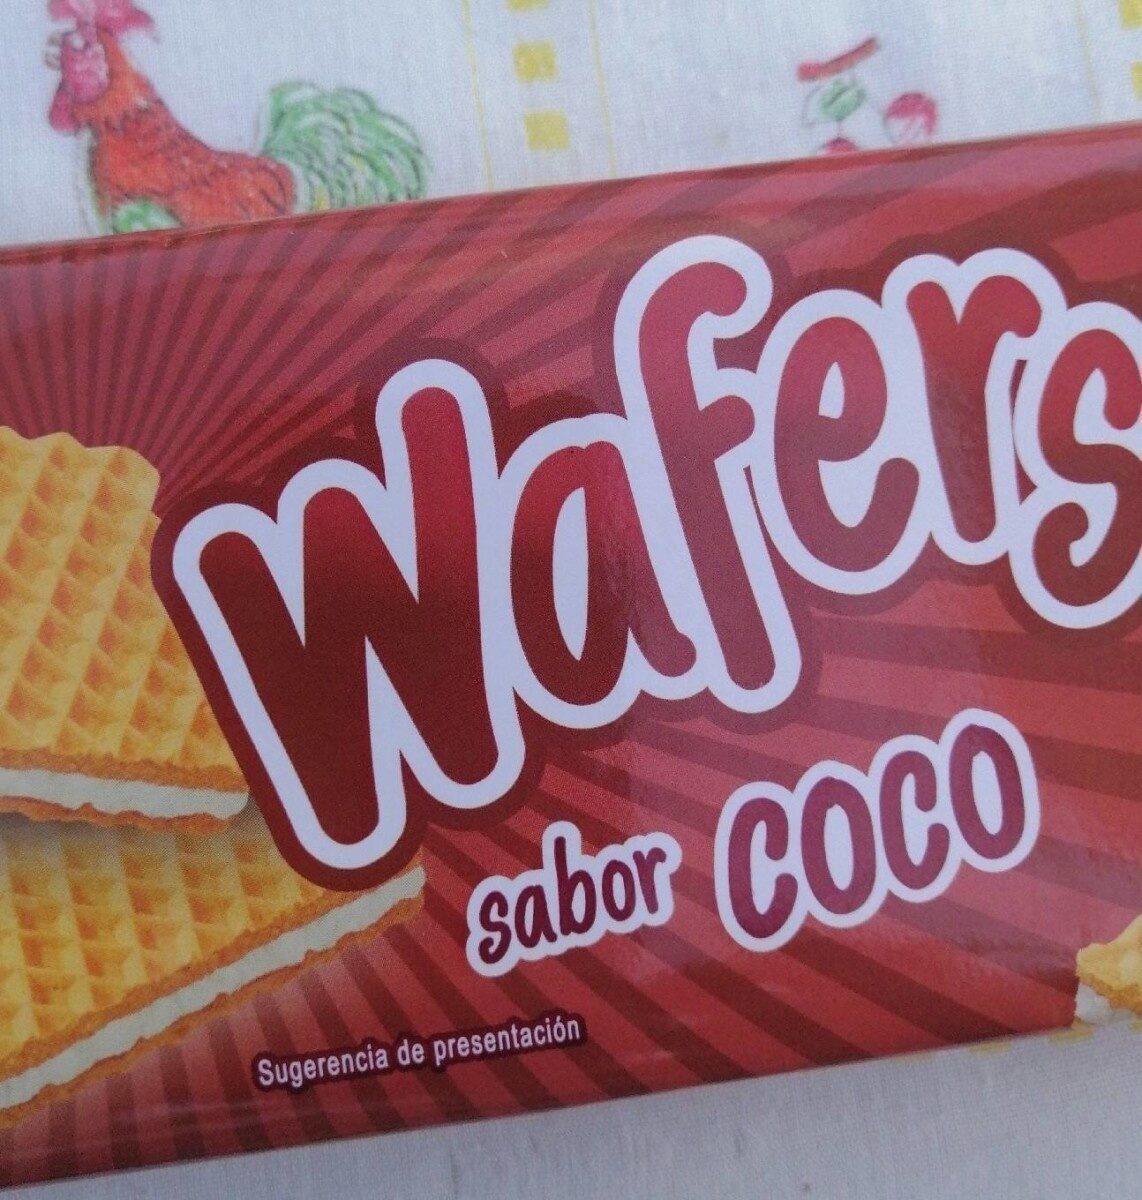 Wafers sabor Coco - Produit - en